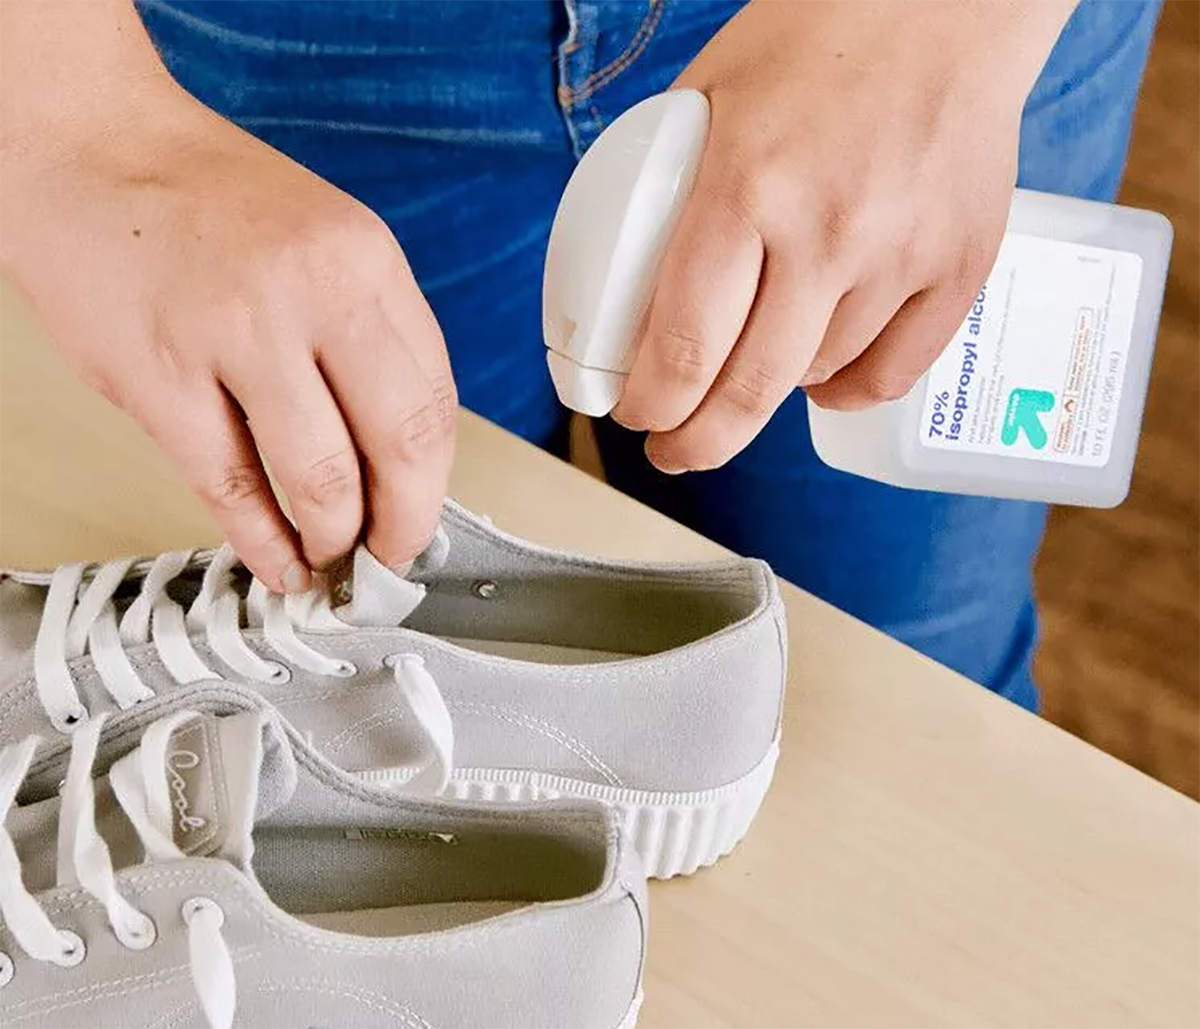 Hóa ra đối phó với mùi hôi giày không khó, tiết lộ 20 cách đơn giản nhưng hiệu quả để đối phó với mùi hôi giày khó chịu - 12